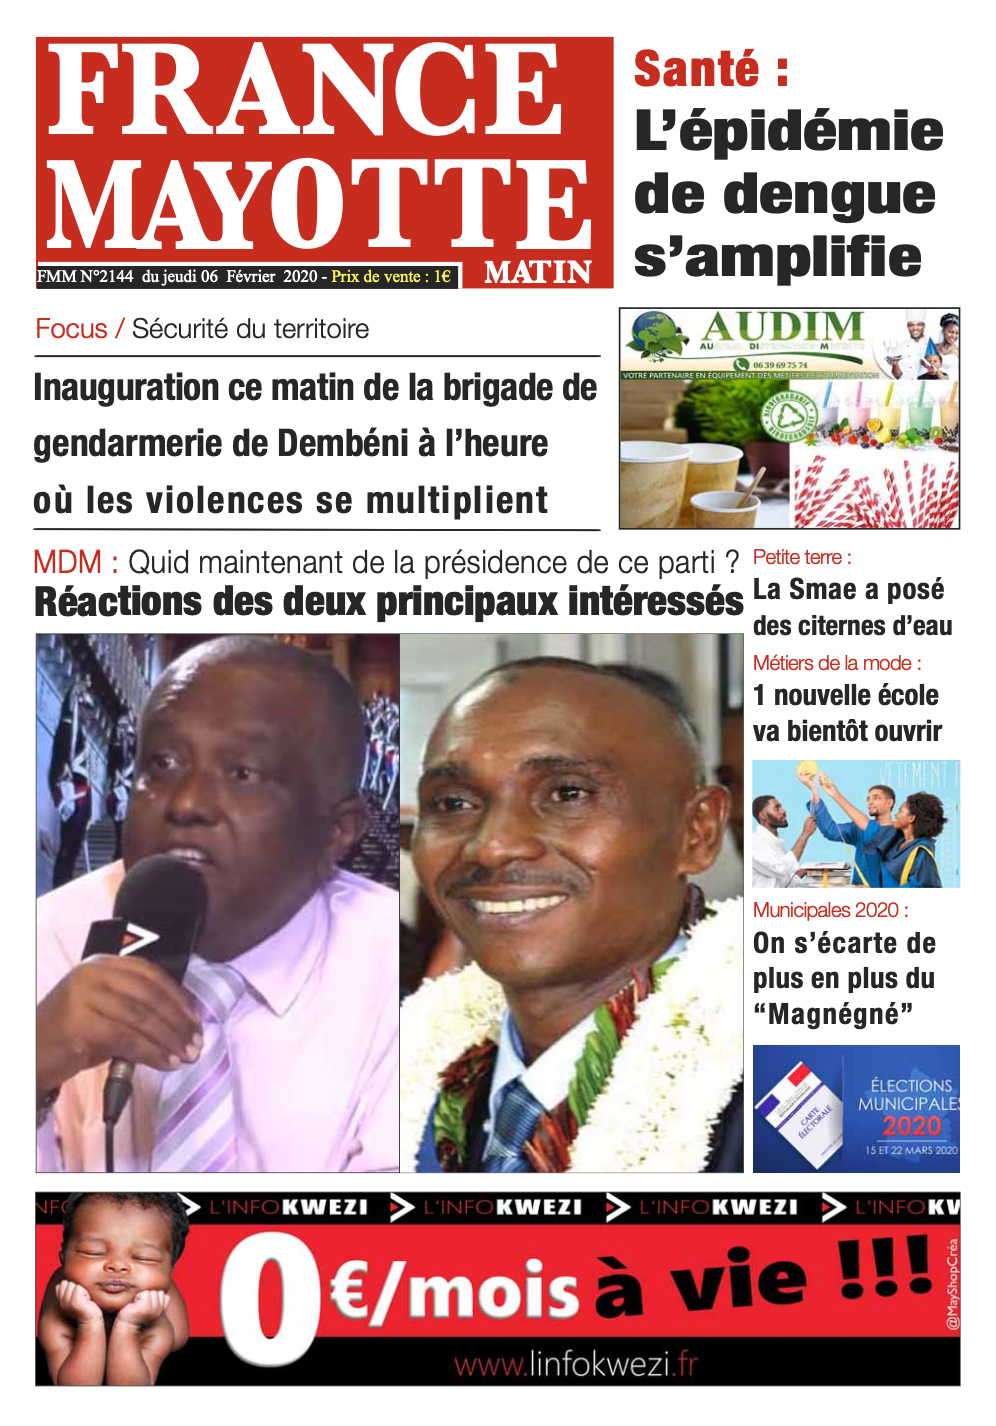 France Mayotte Jeudi 6 février 2020